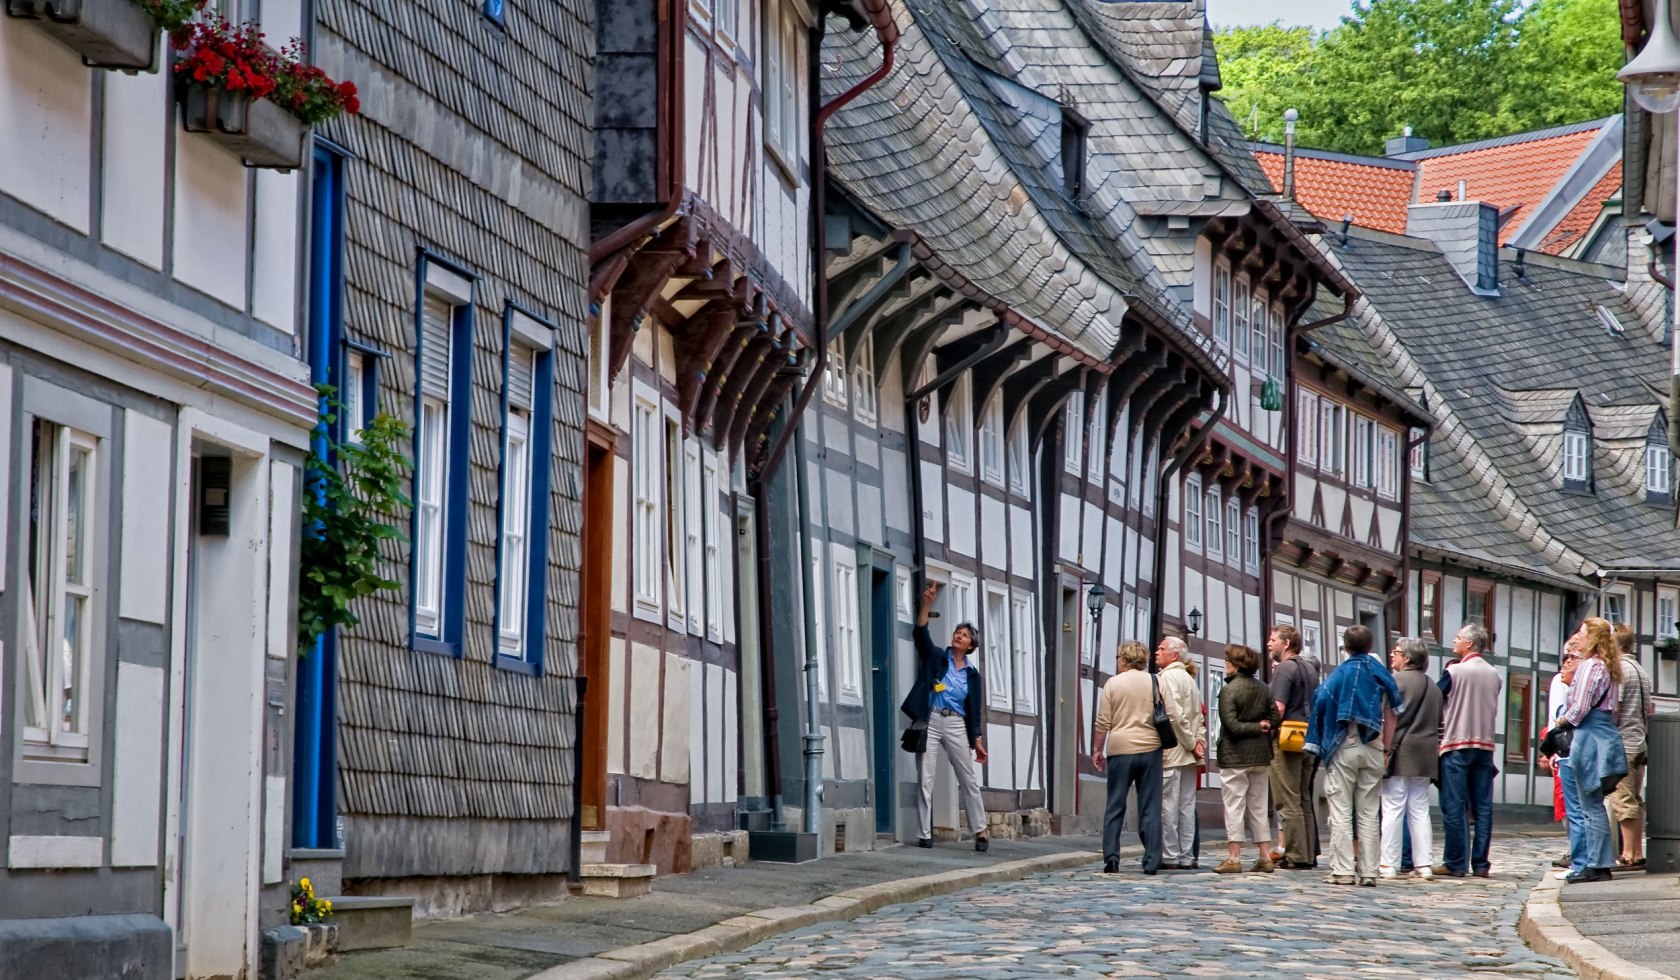 Stadtführung durch die alten Straßen Goslars, © GOSLAR marketing GmbH / Stefan Schiefer